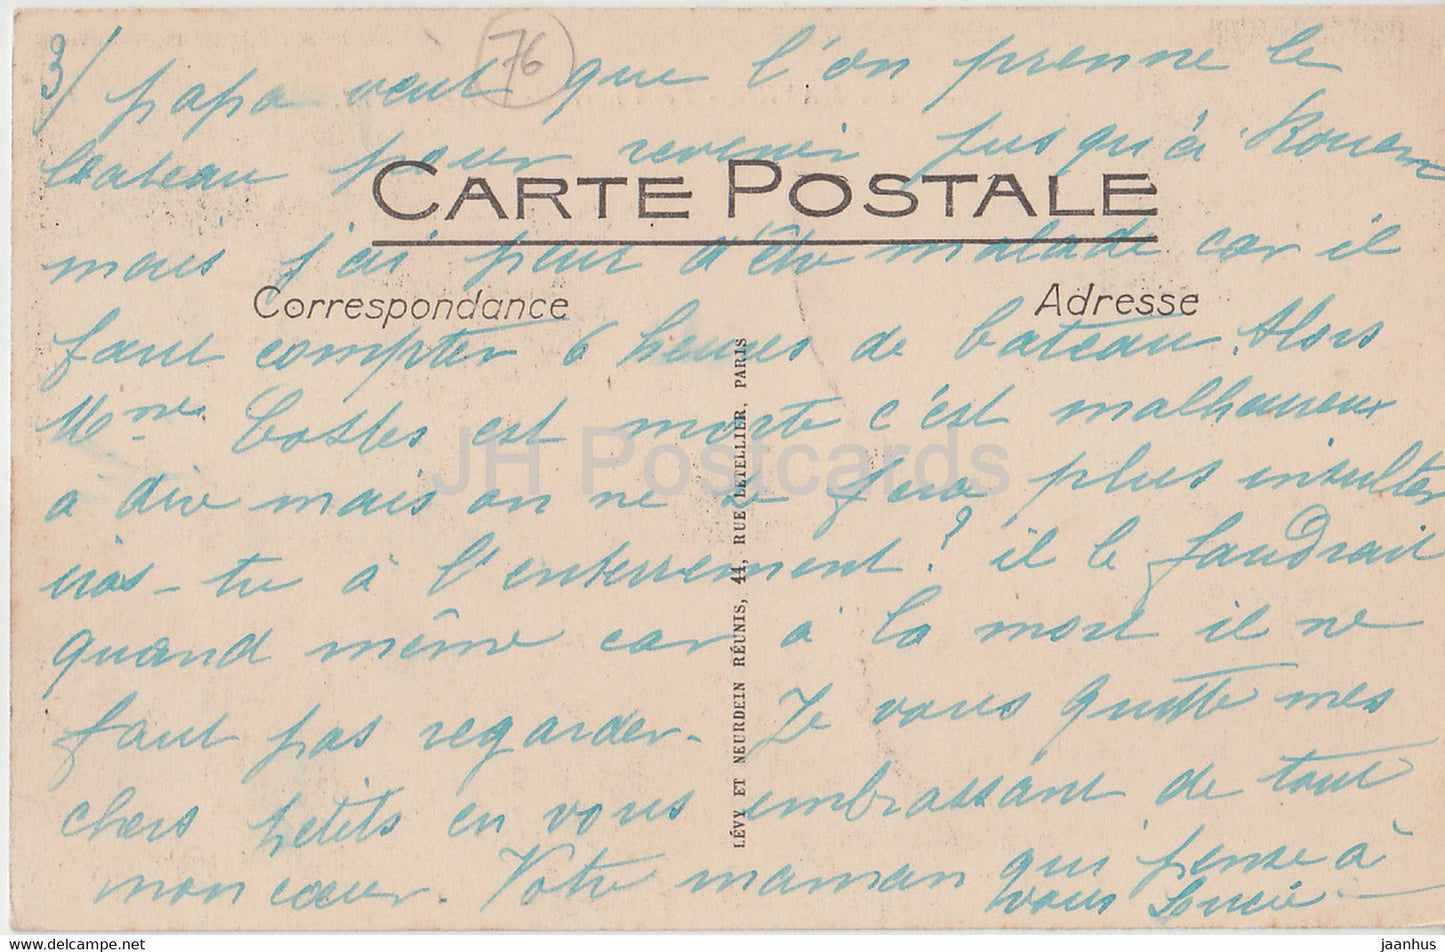 Le Havre - Les Phares de la Heve - Leuchtturm - 63 - alte Postkarte - Frankreich - gebraucht